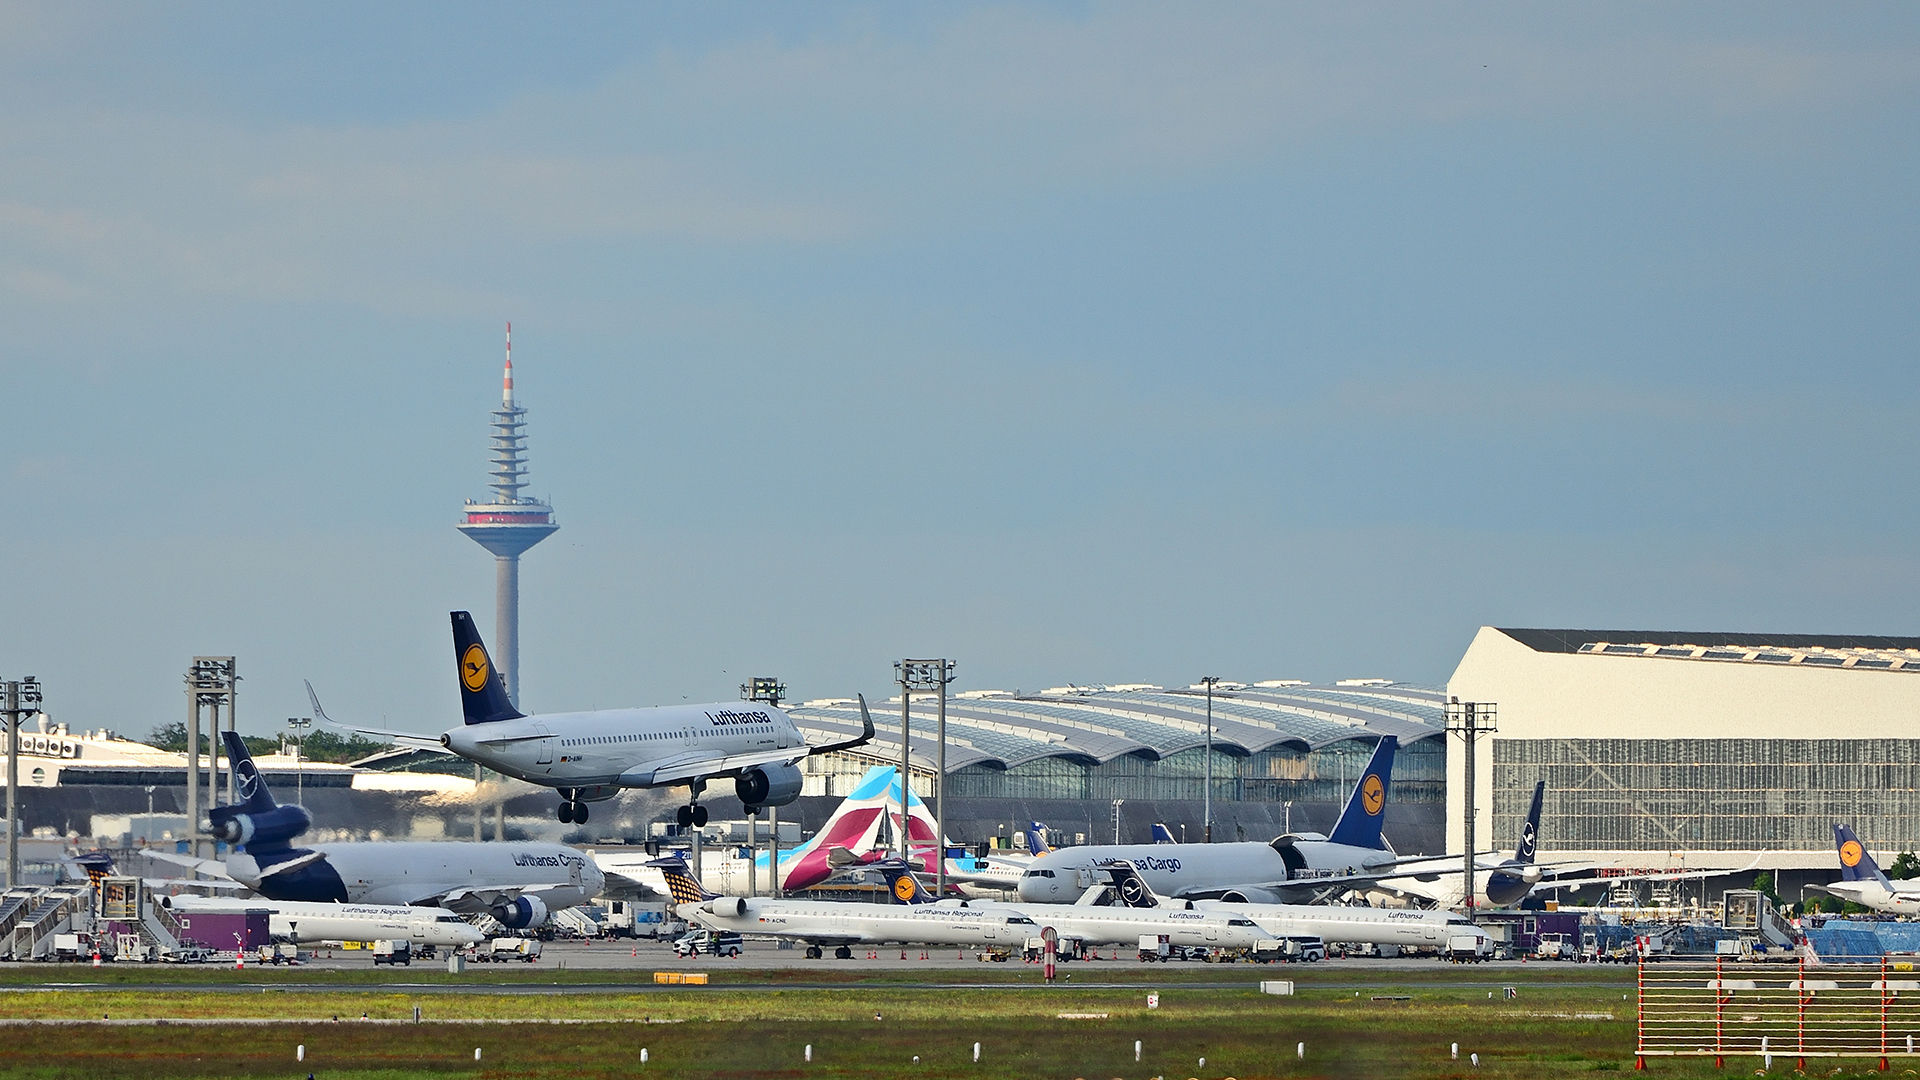 Flugzeuge am Flughafen Frankfurt/a.M. | picture alliance / Daniel Kubirs